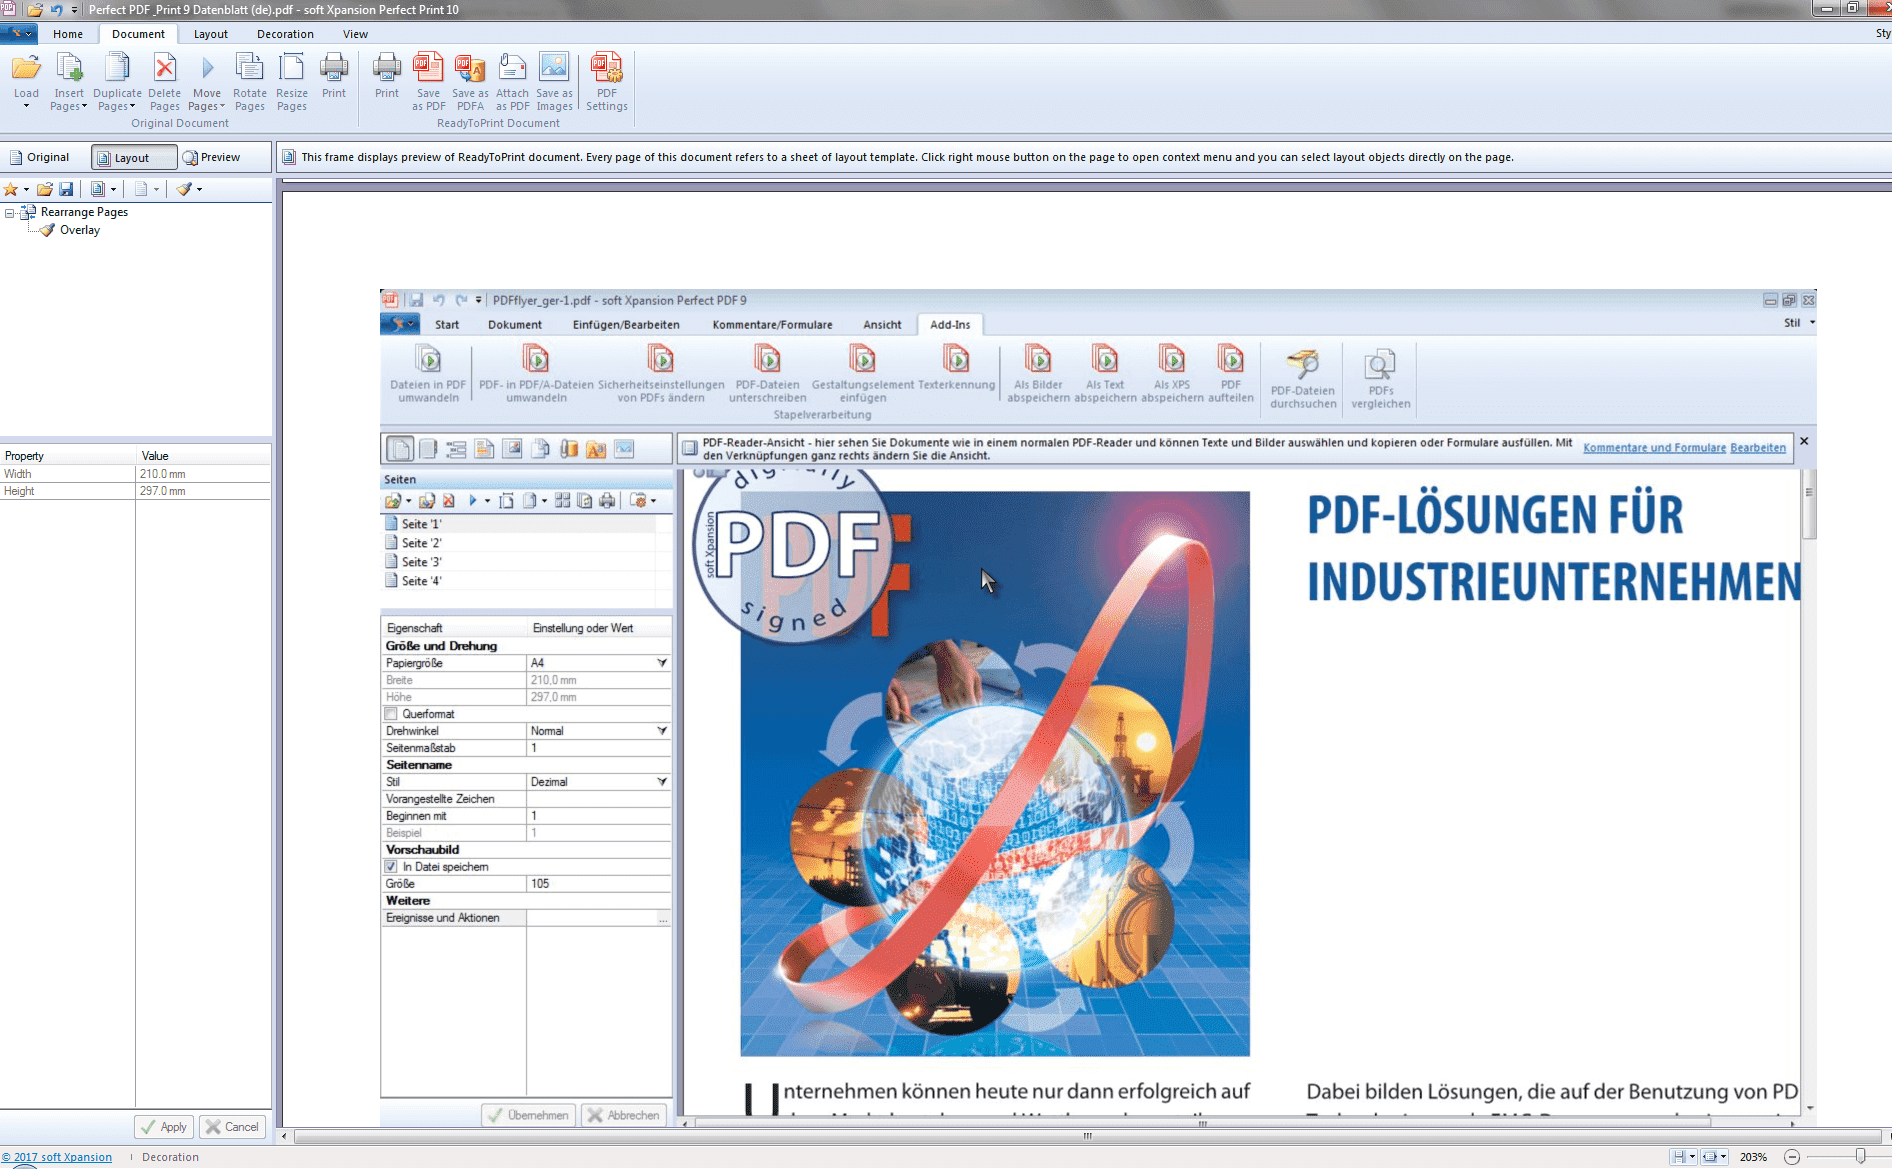 Perfect PDF 10 Premium 3D